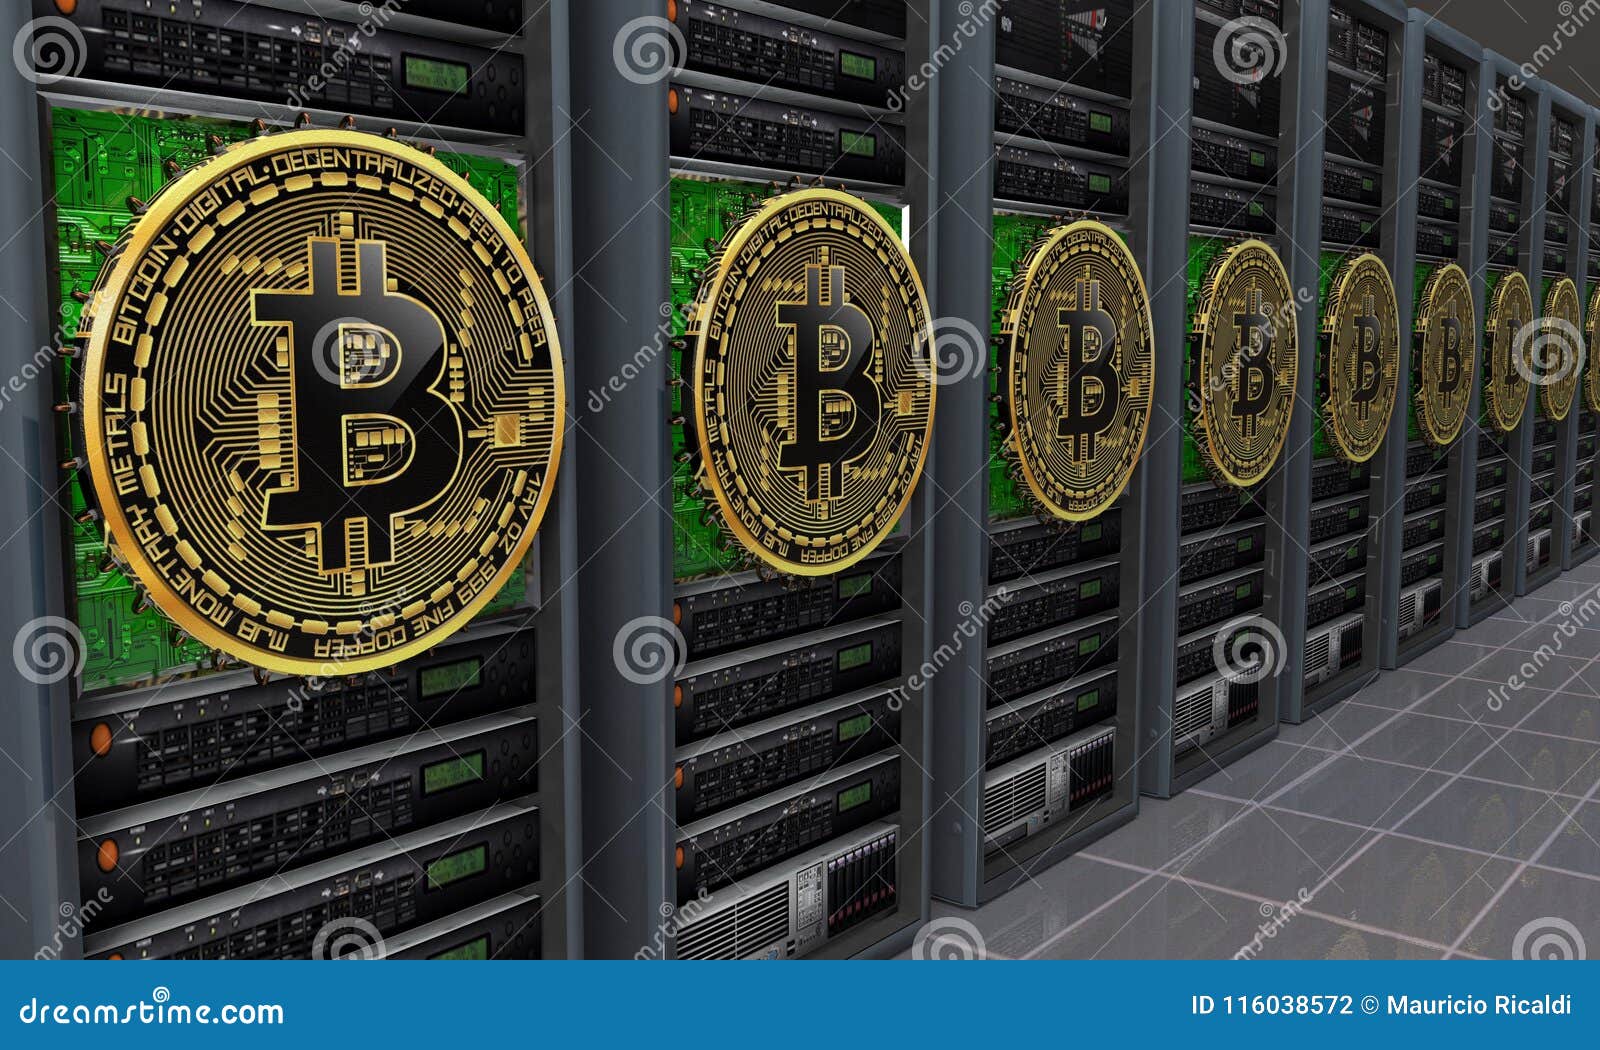 bitcoin server)